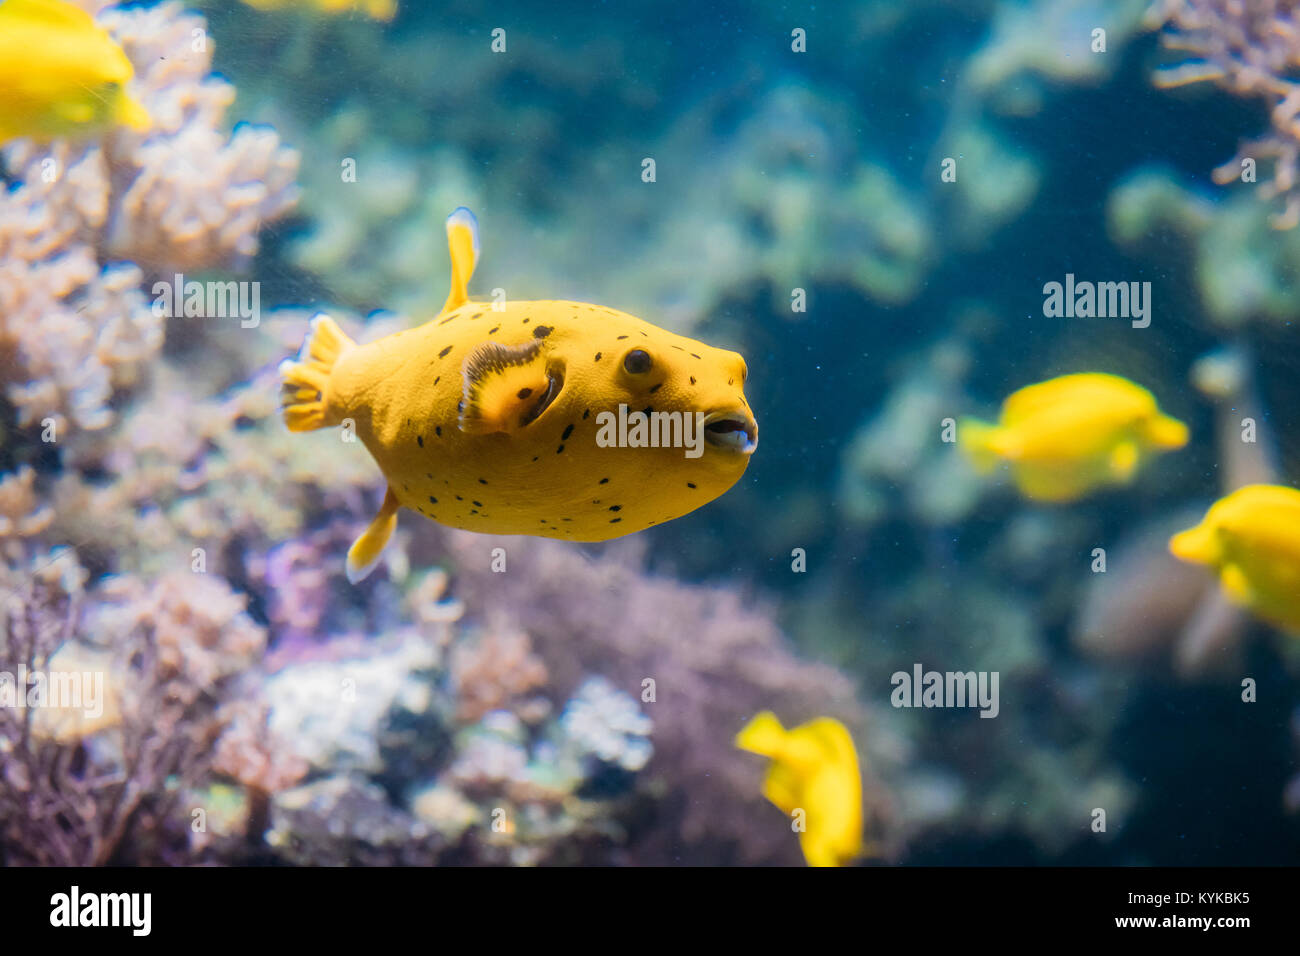 Gelbe Blackspotted Puffer oder Hund - gegenübergestellt Kugelfisch Arothron  Nigropunctatus schwimmen im Wasser. Wenn nicht ordnungsgemäß vorbereitet,  Toxin gefunden In Kugelfische-T Stockfotografie - Alamy